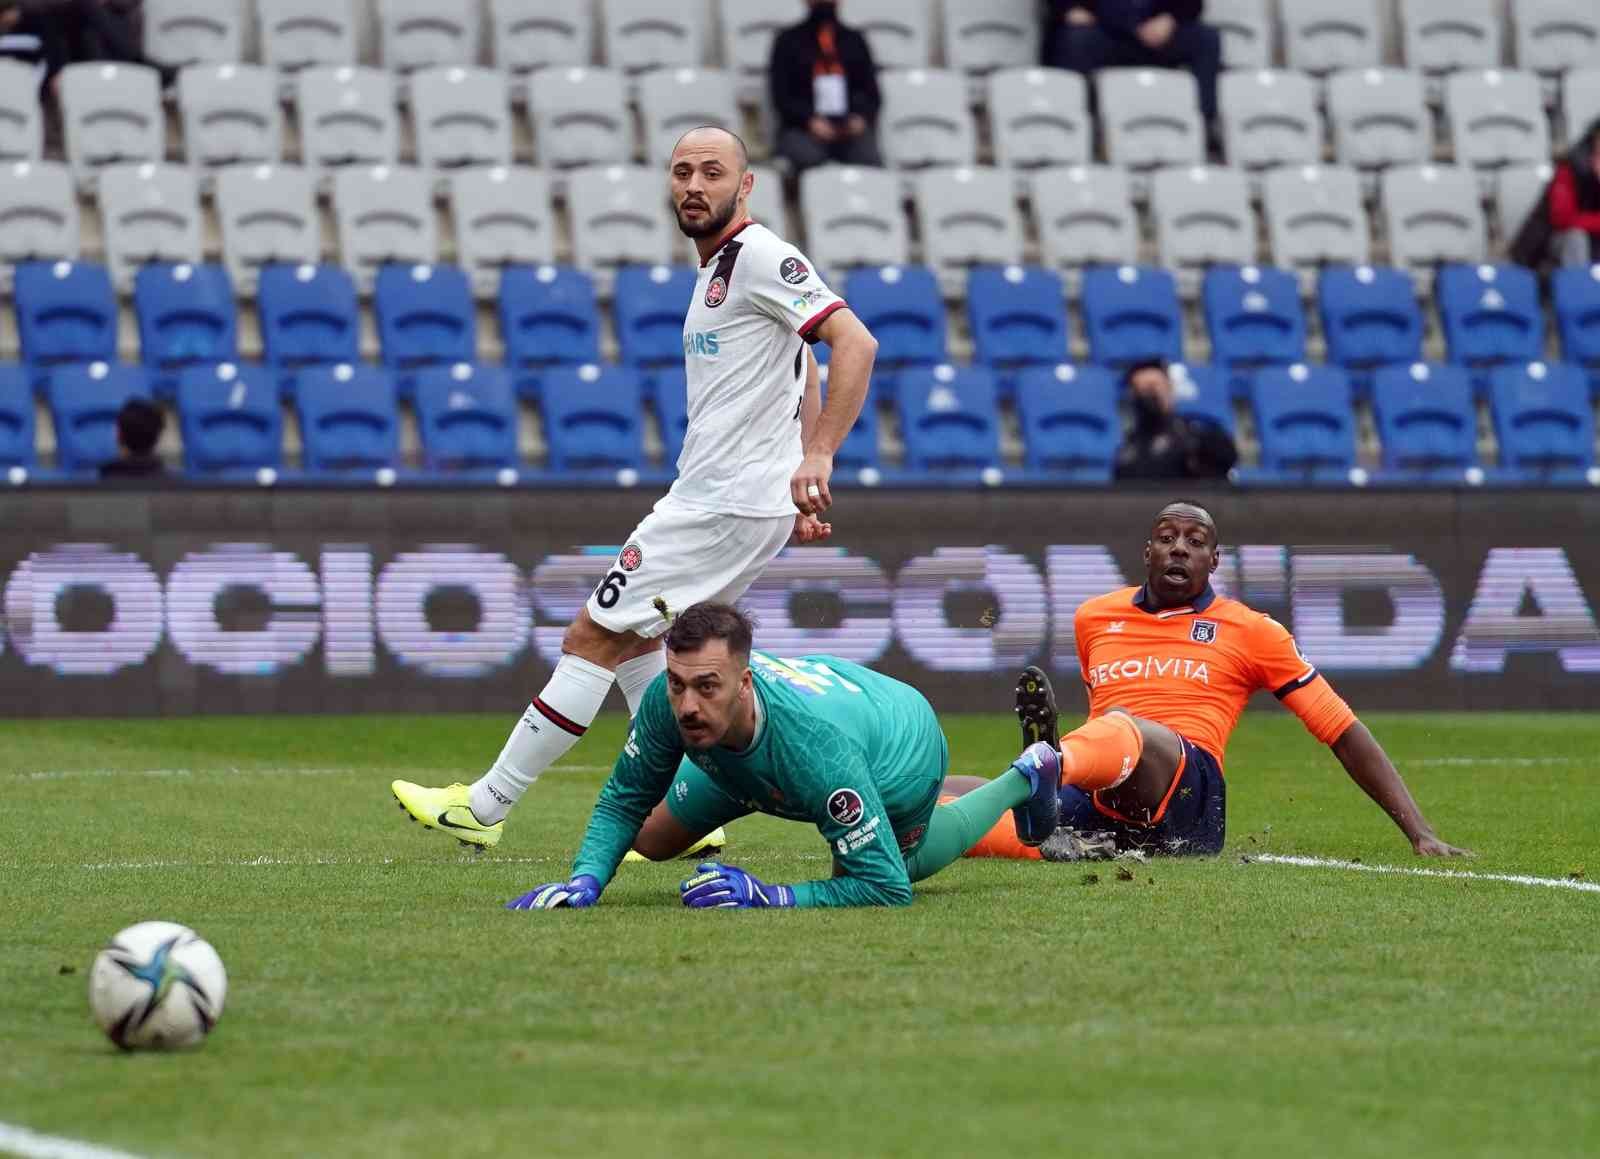 Spor Toto Süper Lig: Medipol Başakşehir: 0 - Karagümrük: 0 (Maç devam ediyor) #istanbul